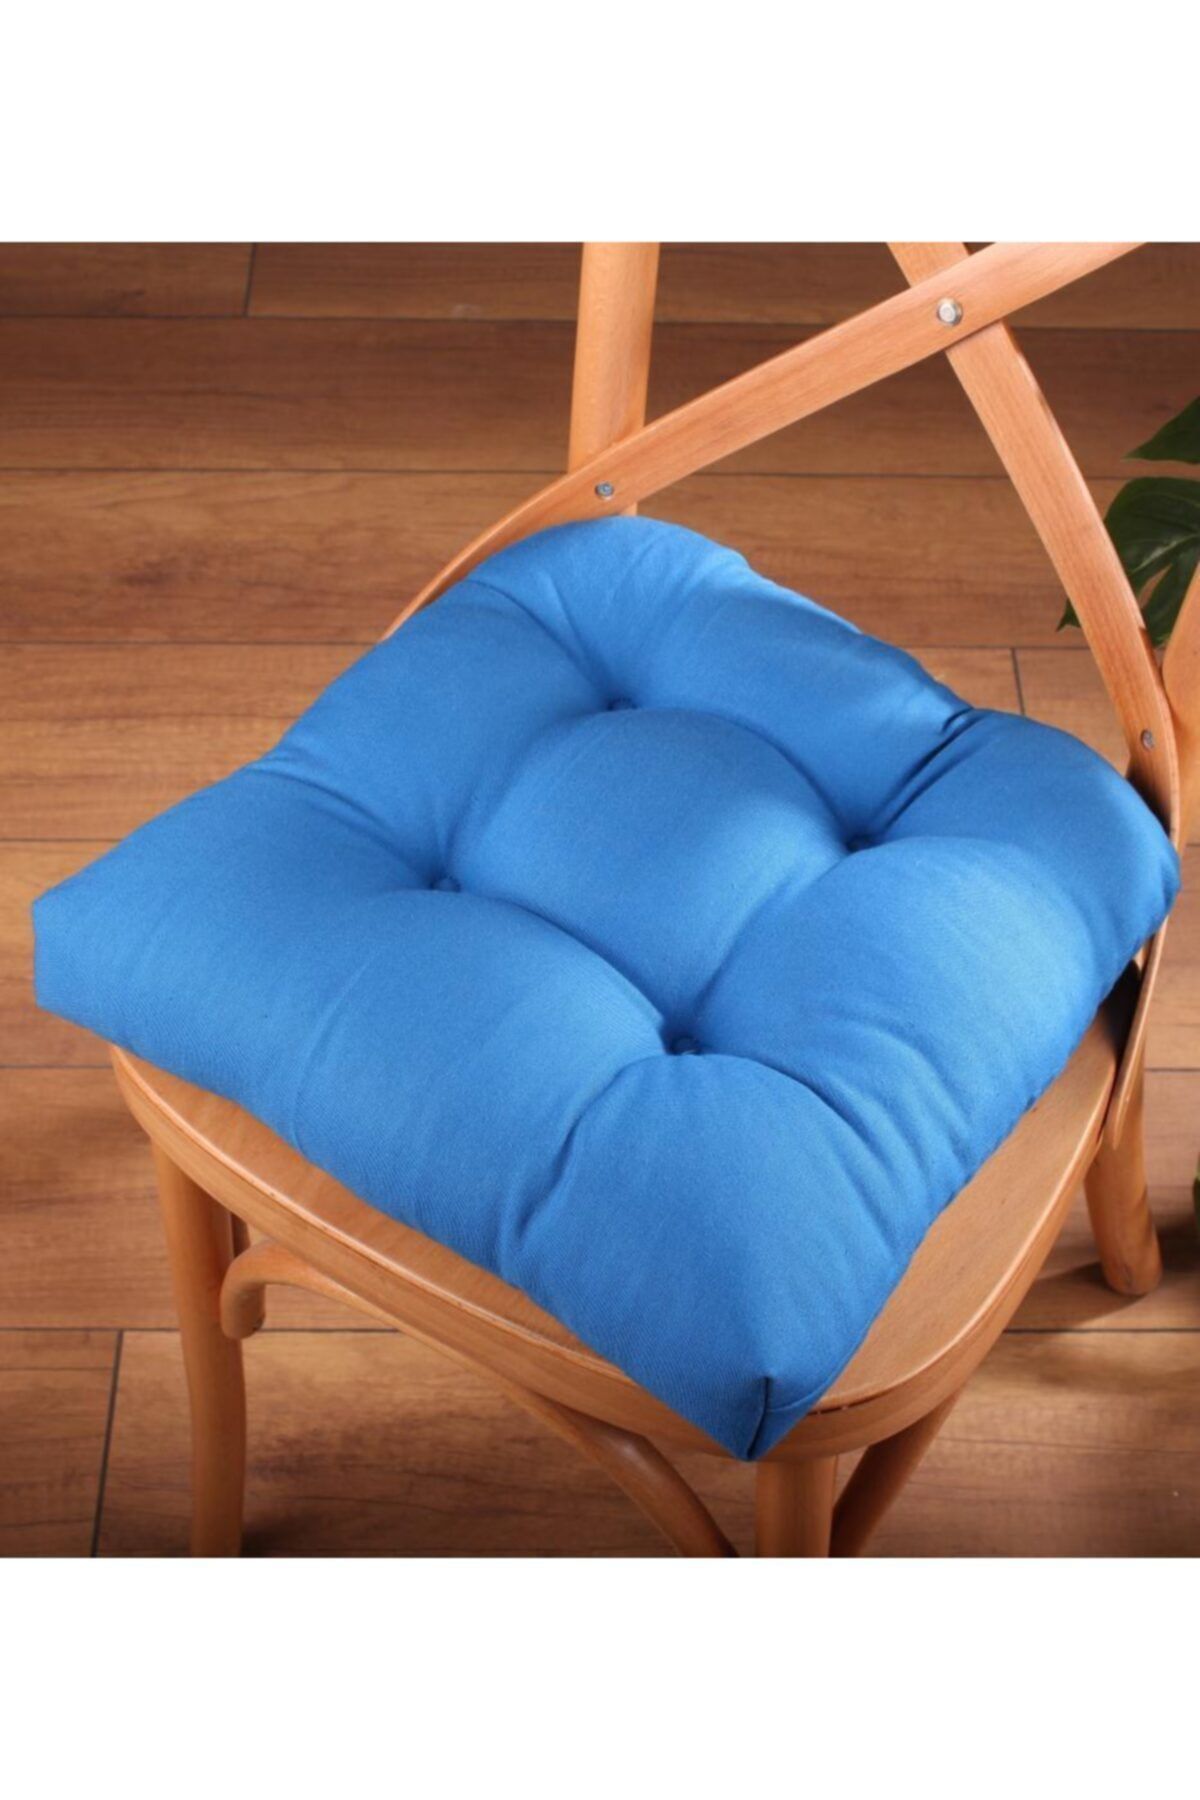 ALTINPAMUK Gold Pofidik Mavi Sandalye Minderi Özel Dikişli Bağcıklı 40x40cm